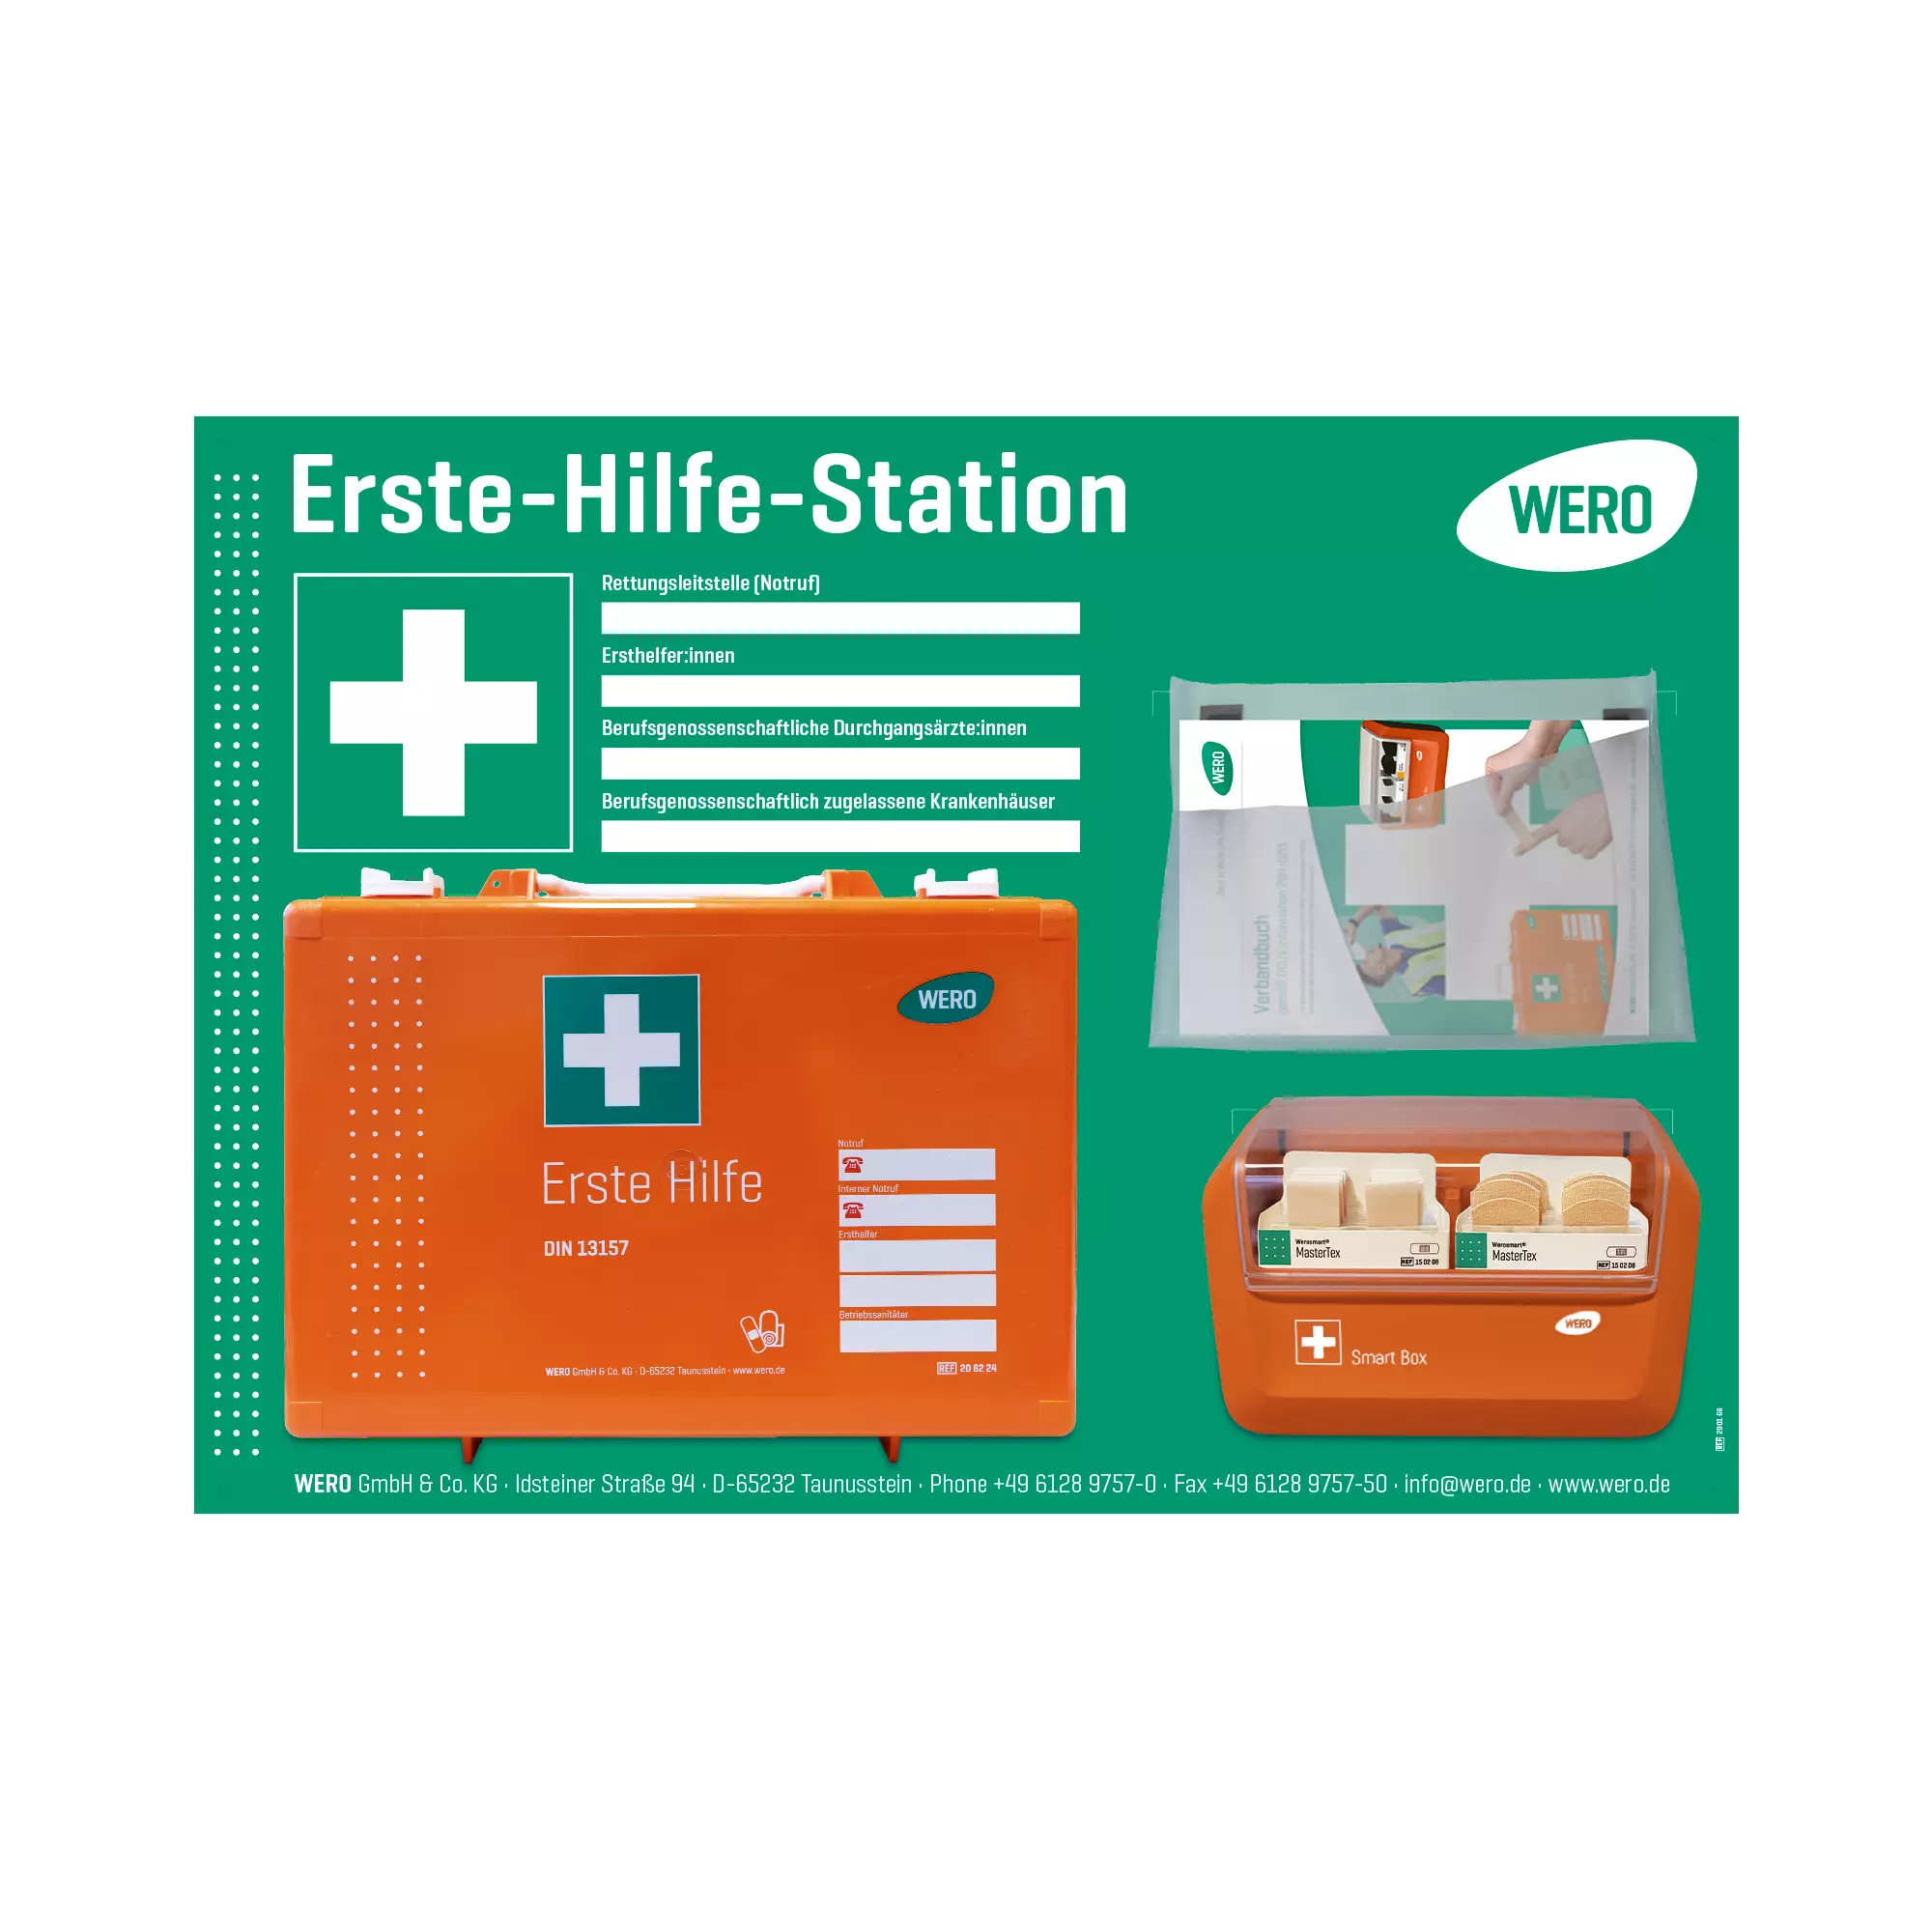 WERO first aid station